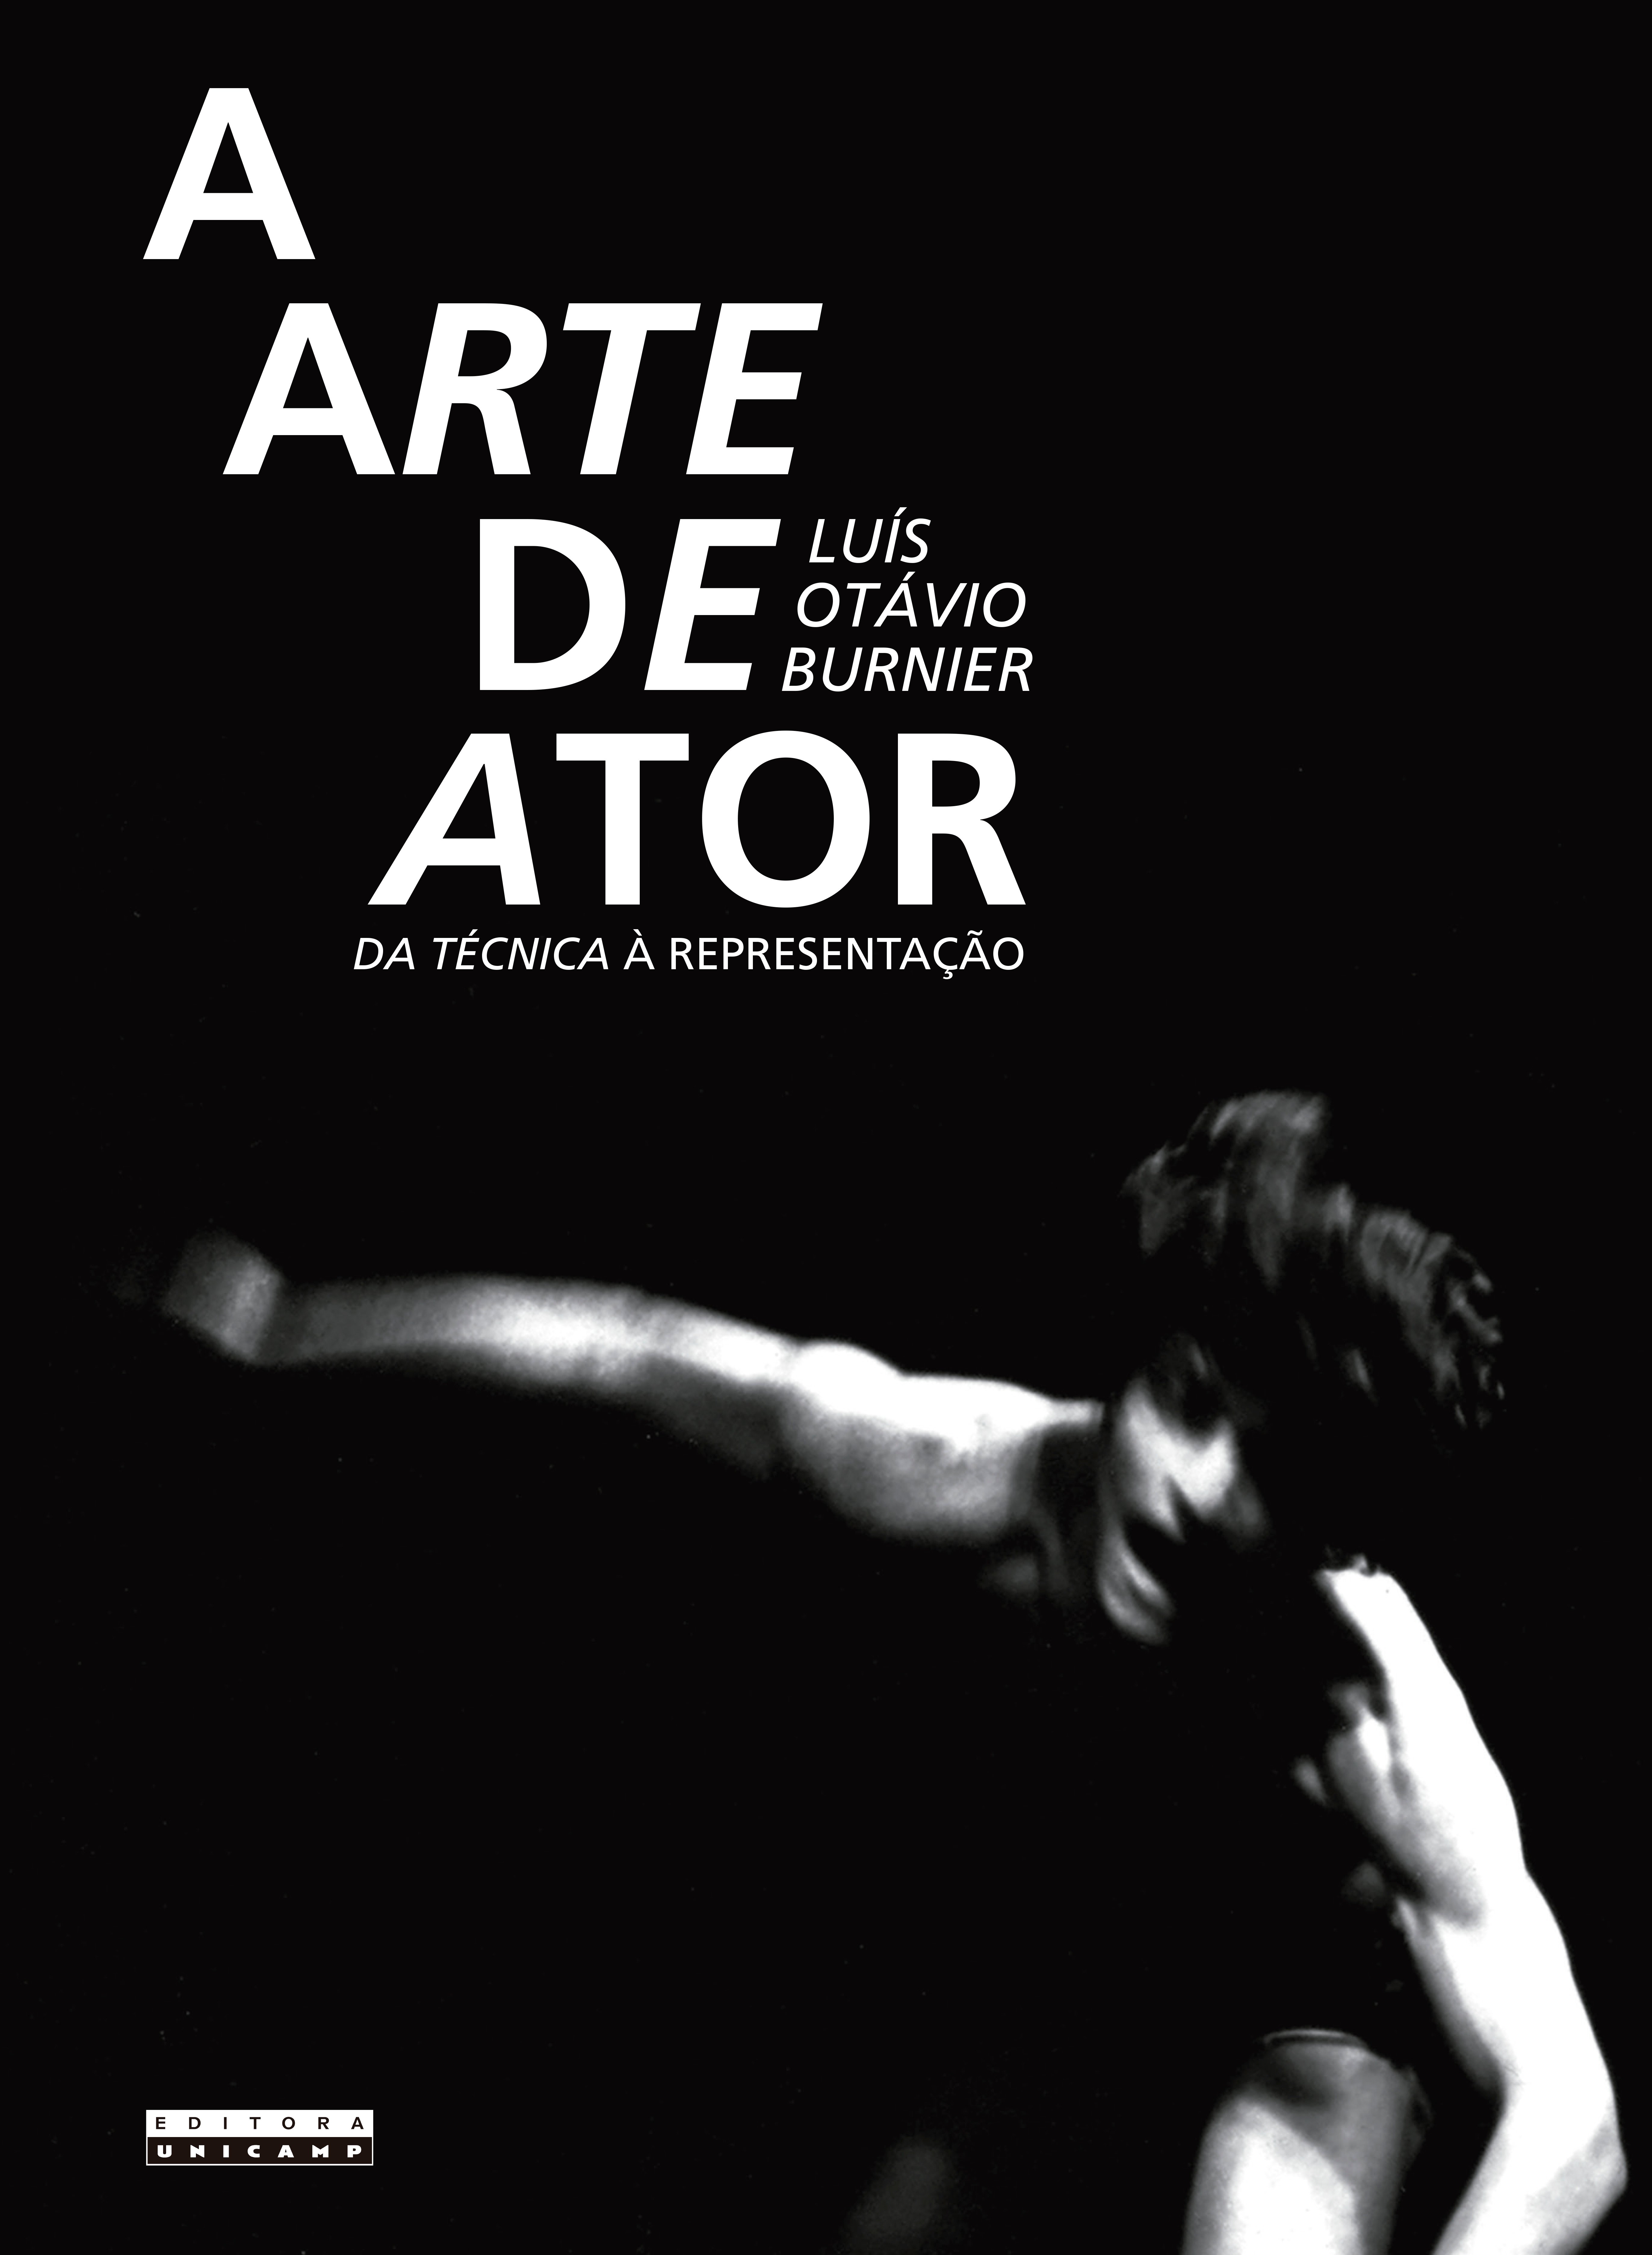 A arte de ator. Da técnica à representação, livro de Luís Otávio Burnier